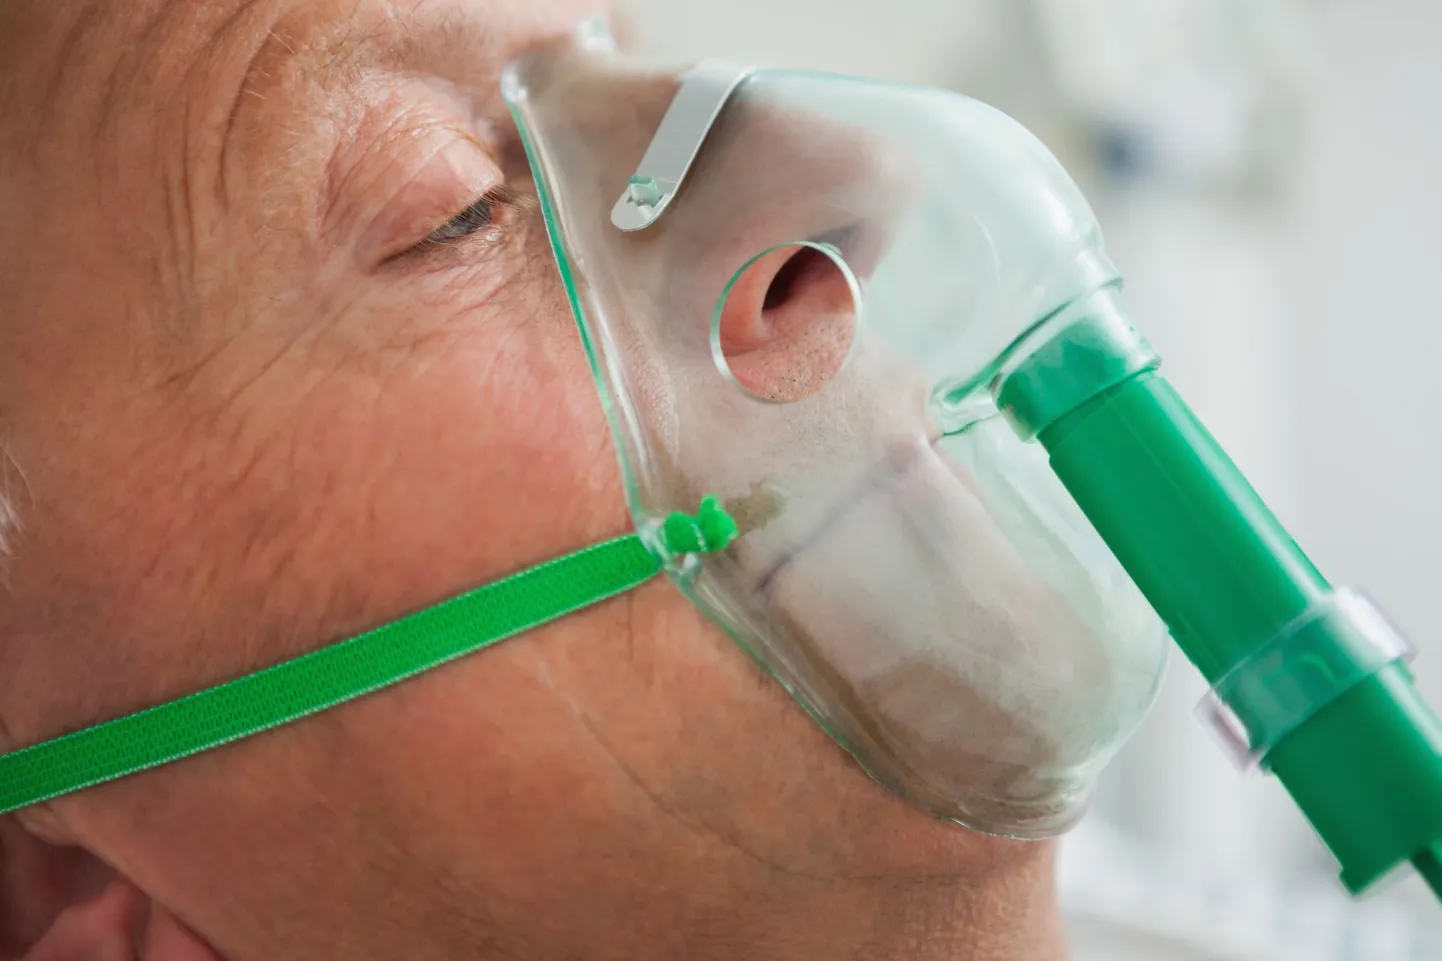 Naerugaasi kasutatakse segus hapnikuga ja teiste gaasidega narkoosi tegemisel (anesteesia ja analgeesia).